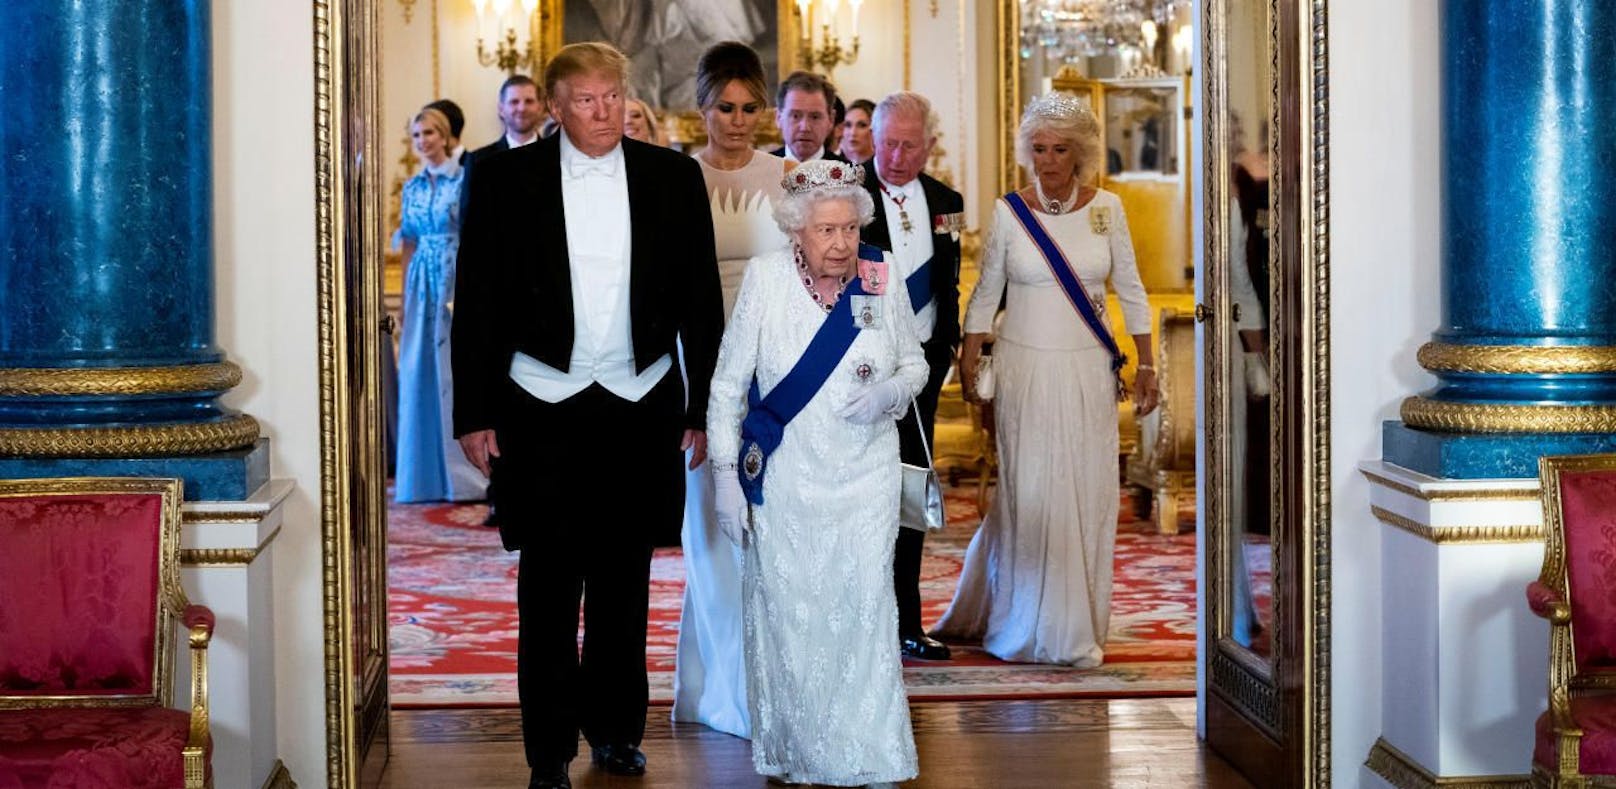 Donald Trump und die Queen samt Gefolge.